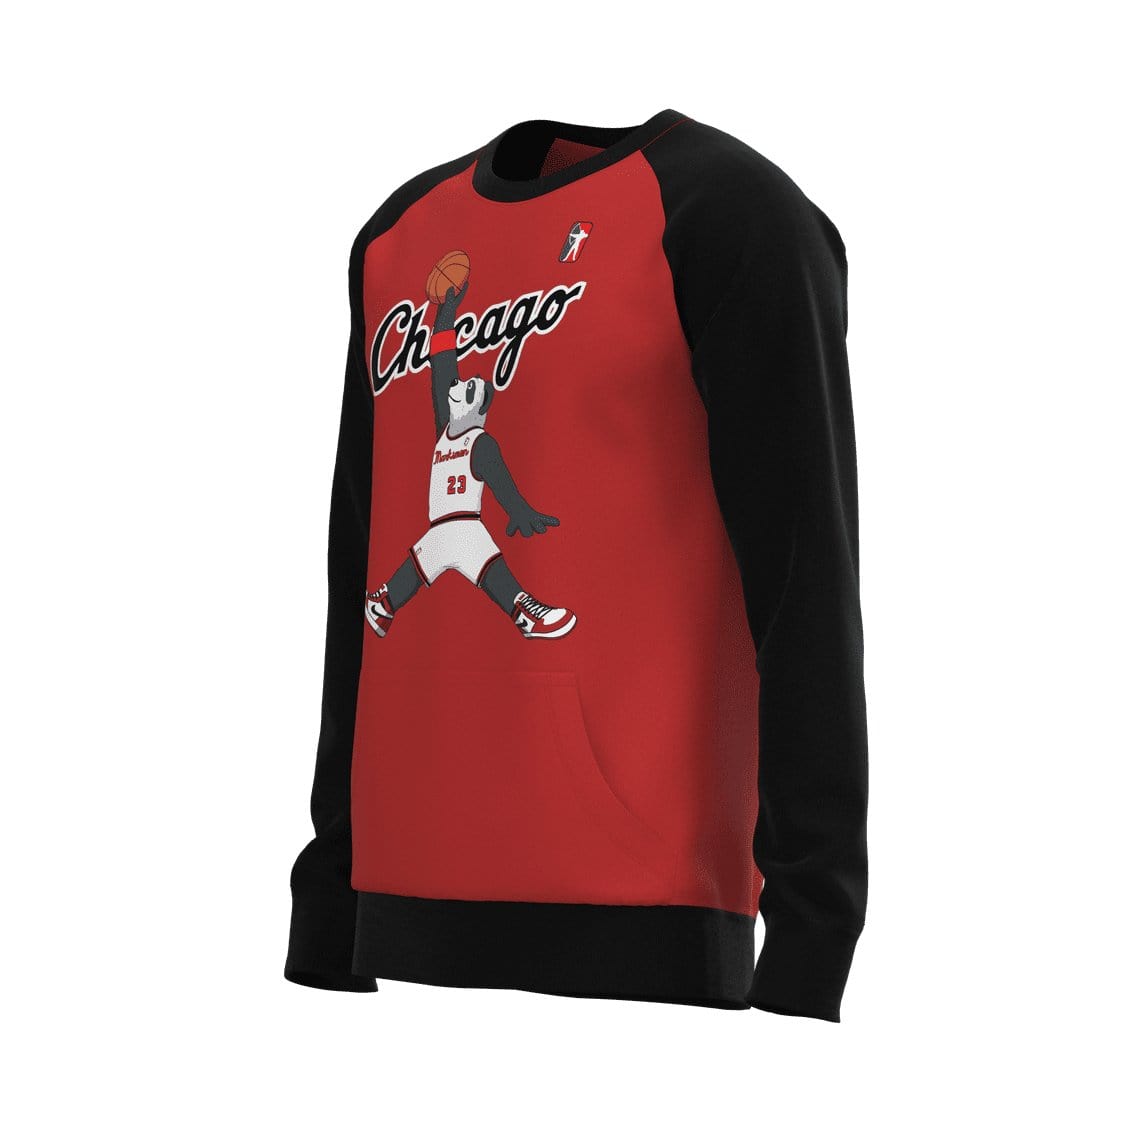 J.Hinton Collections Men's Chicago Jordan Inspired Raglan Sweatshirt